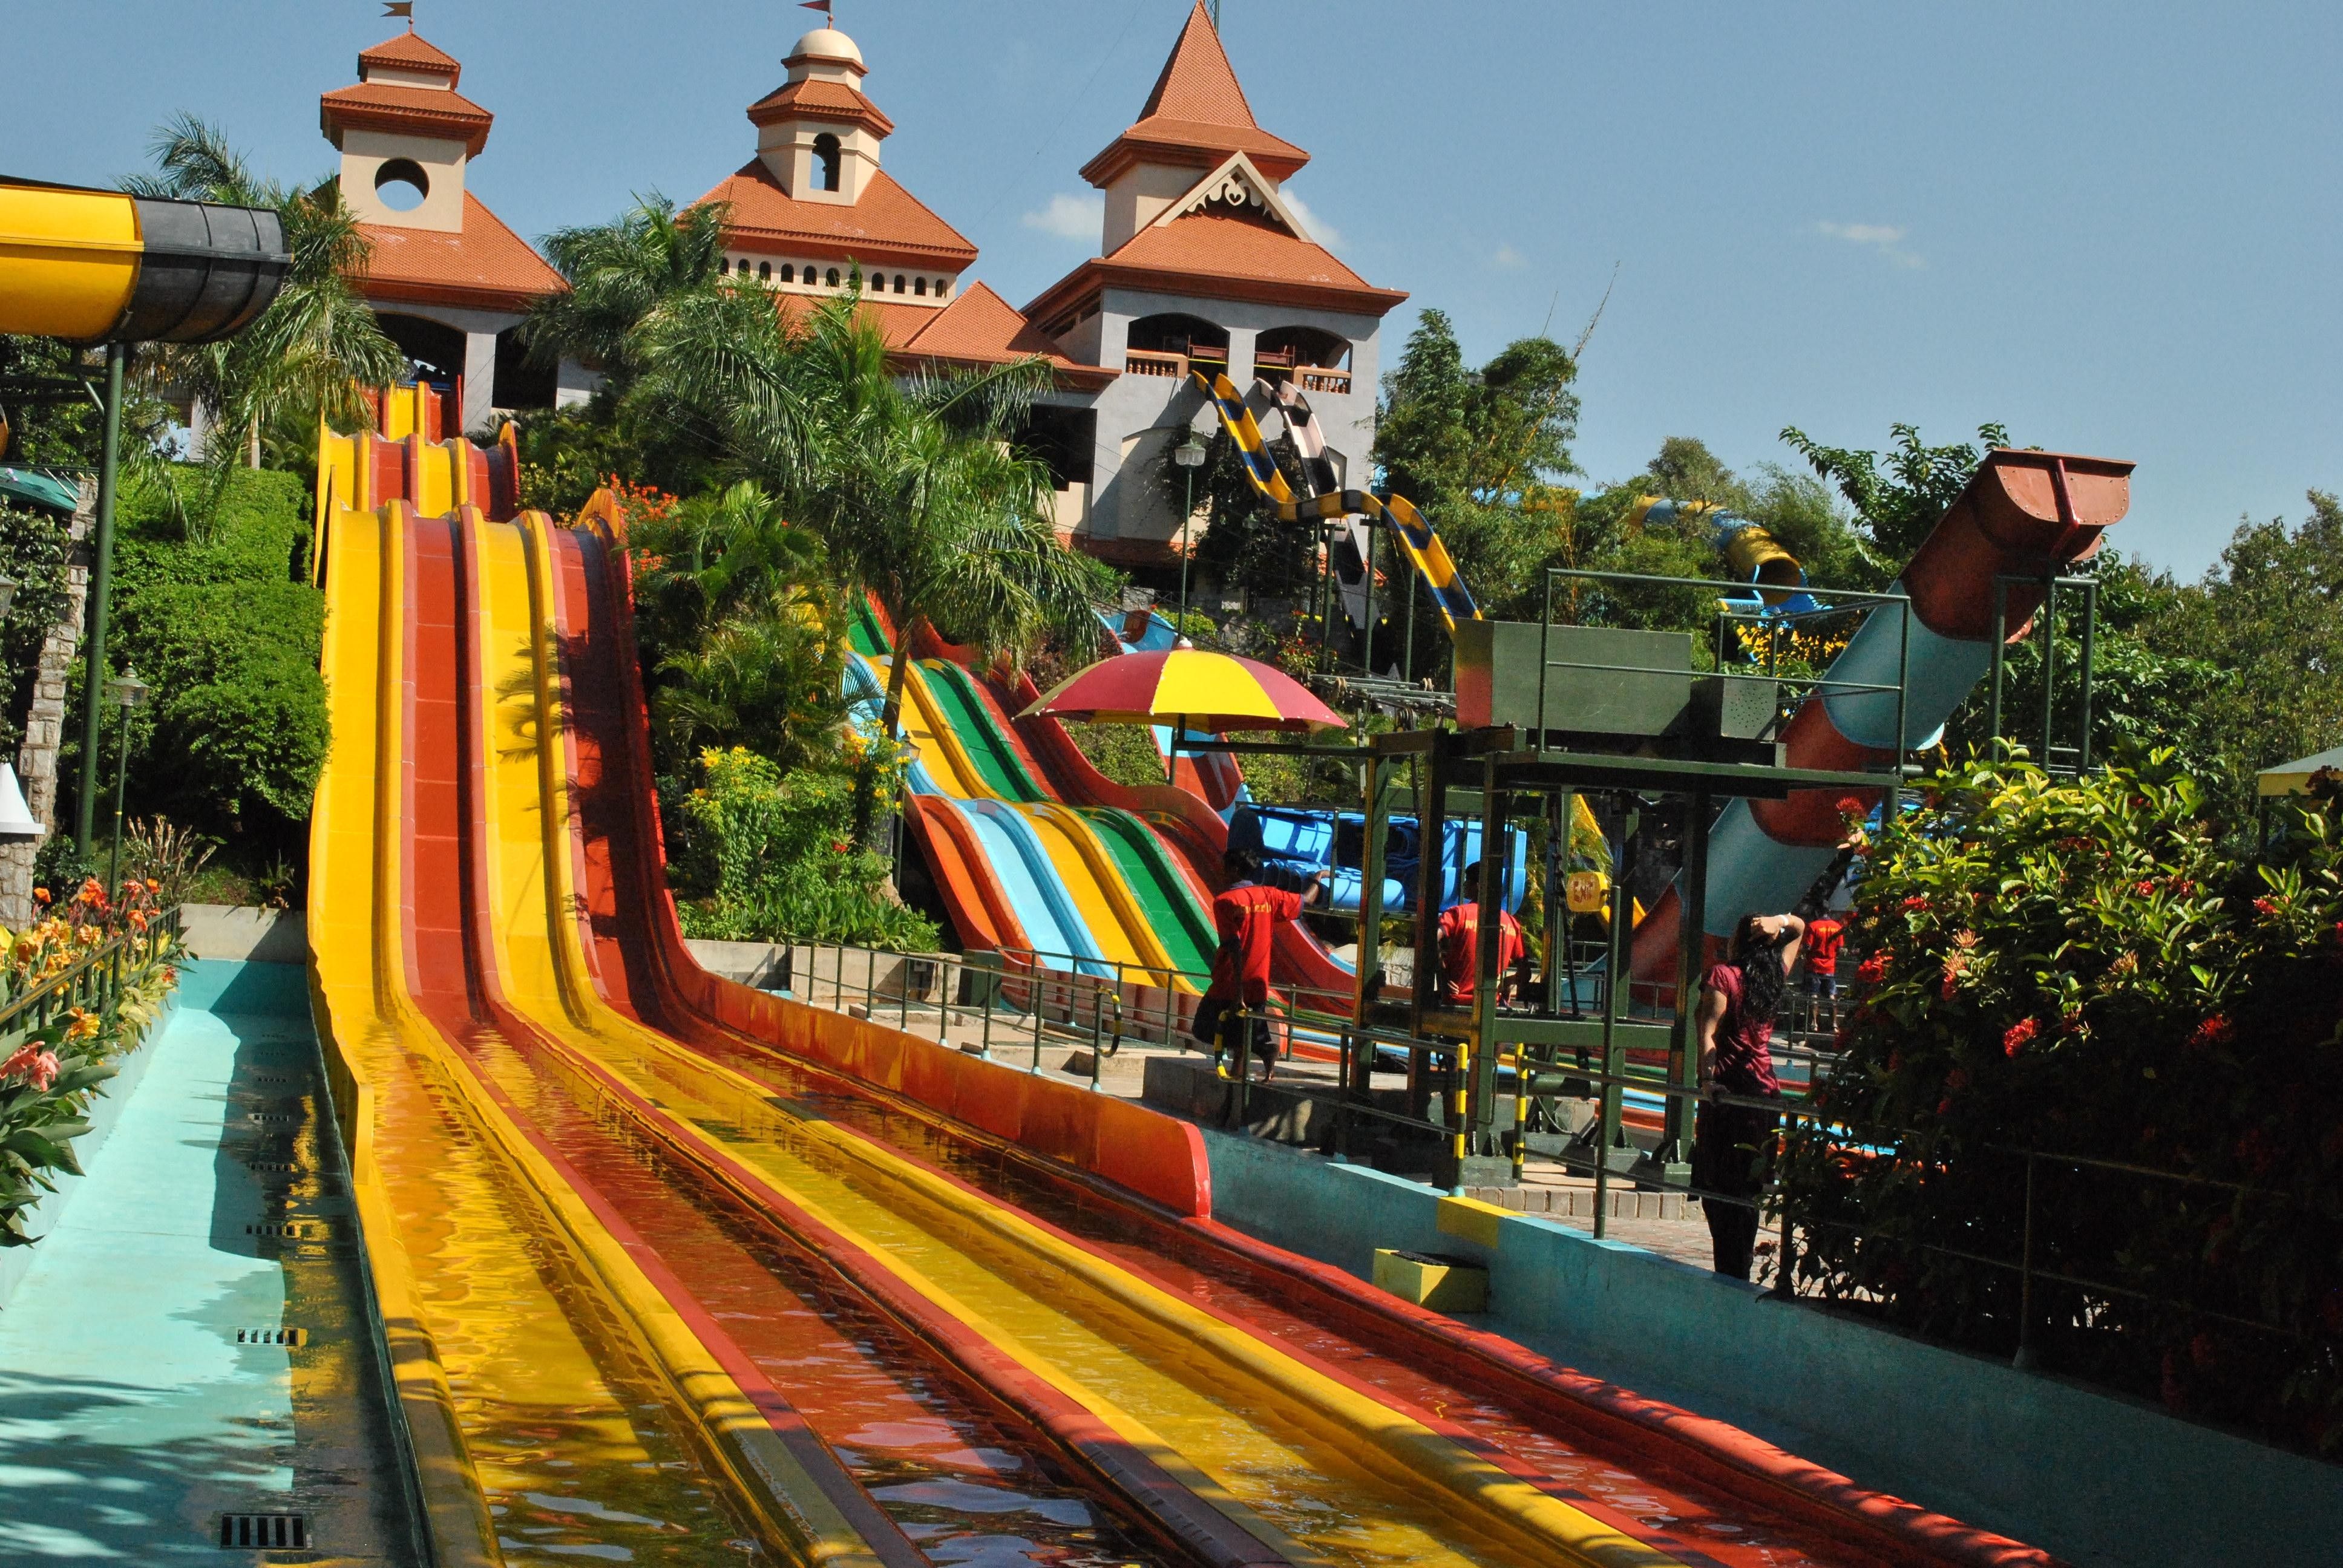 في كيرلا و أفضل 11 ملاهي ترفيهية للعوائل - Theme parks in Kerala: The 11 best theme parks for families